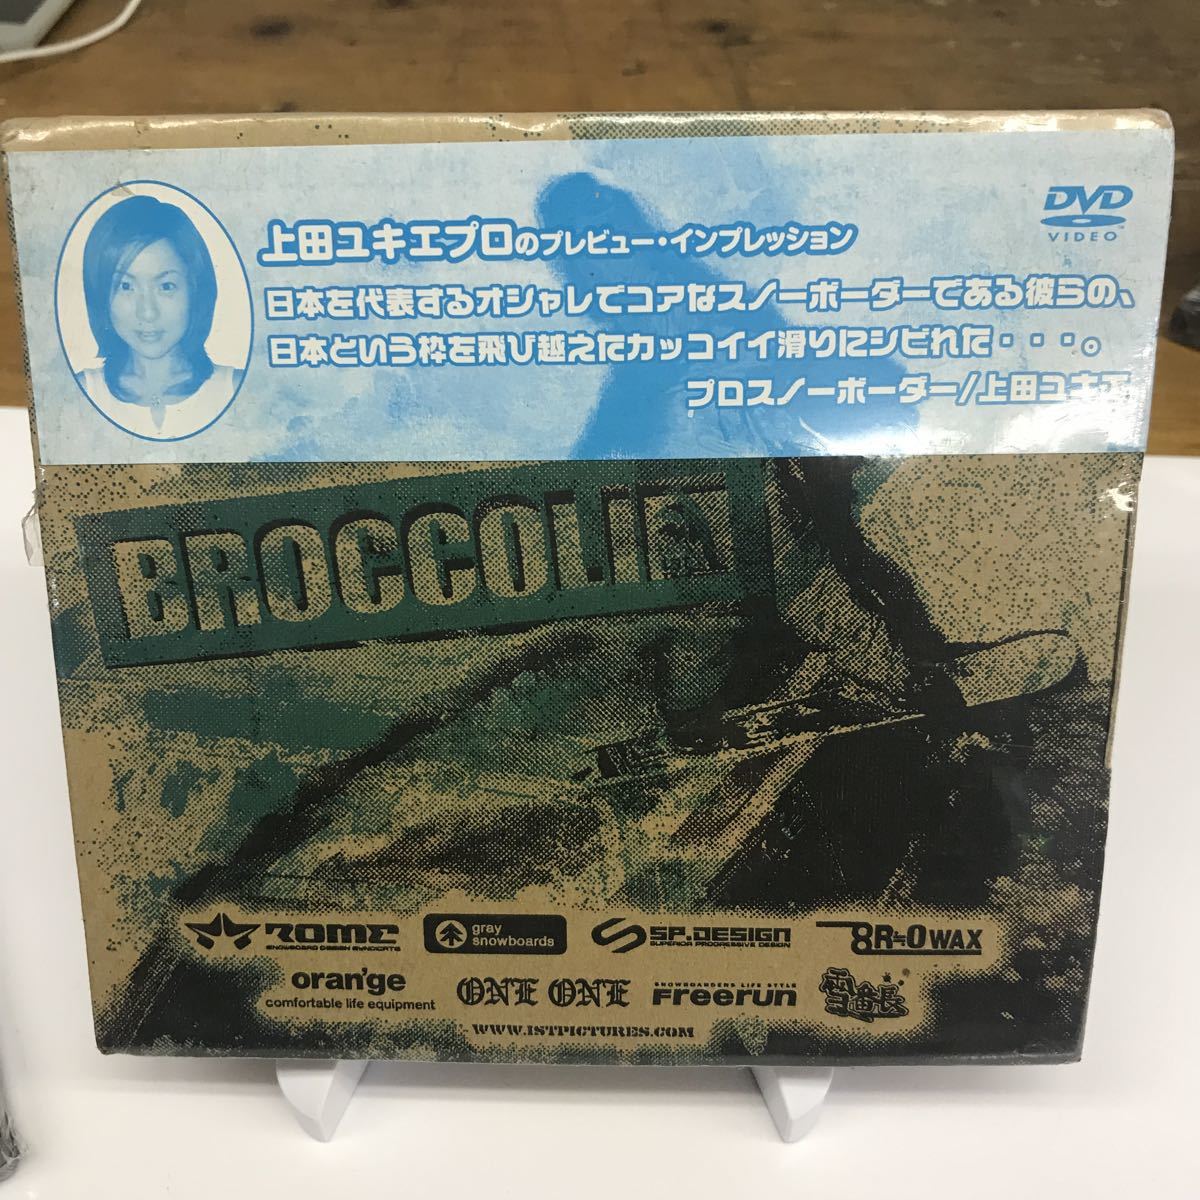 BROCCOLIN сверху рисовое поле ... Pro др. ностальгия. DVD новый товар не использовался kama Jun Ishikawa в сборе и т.п. и т.п. включая доставку 